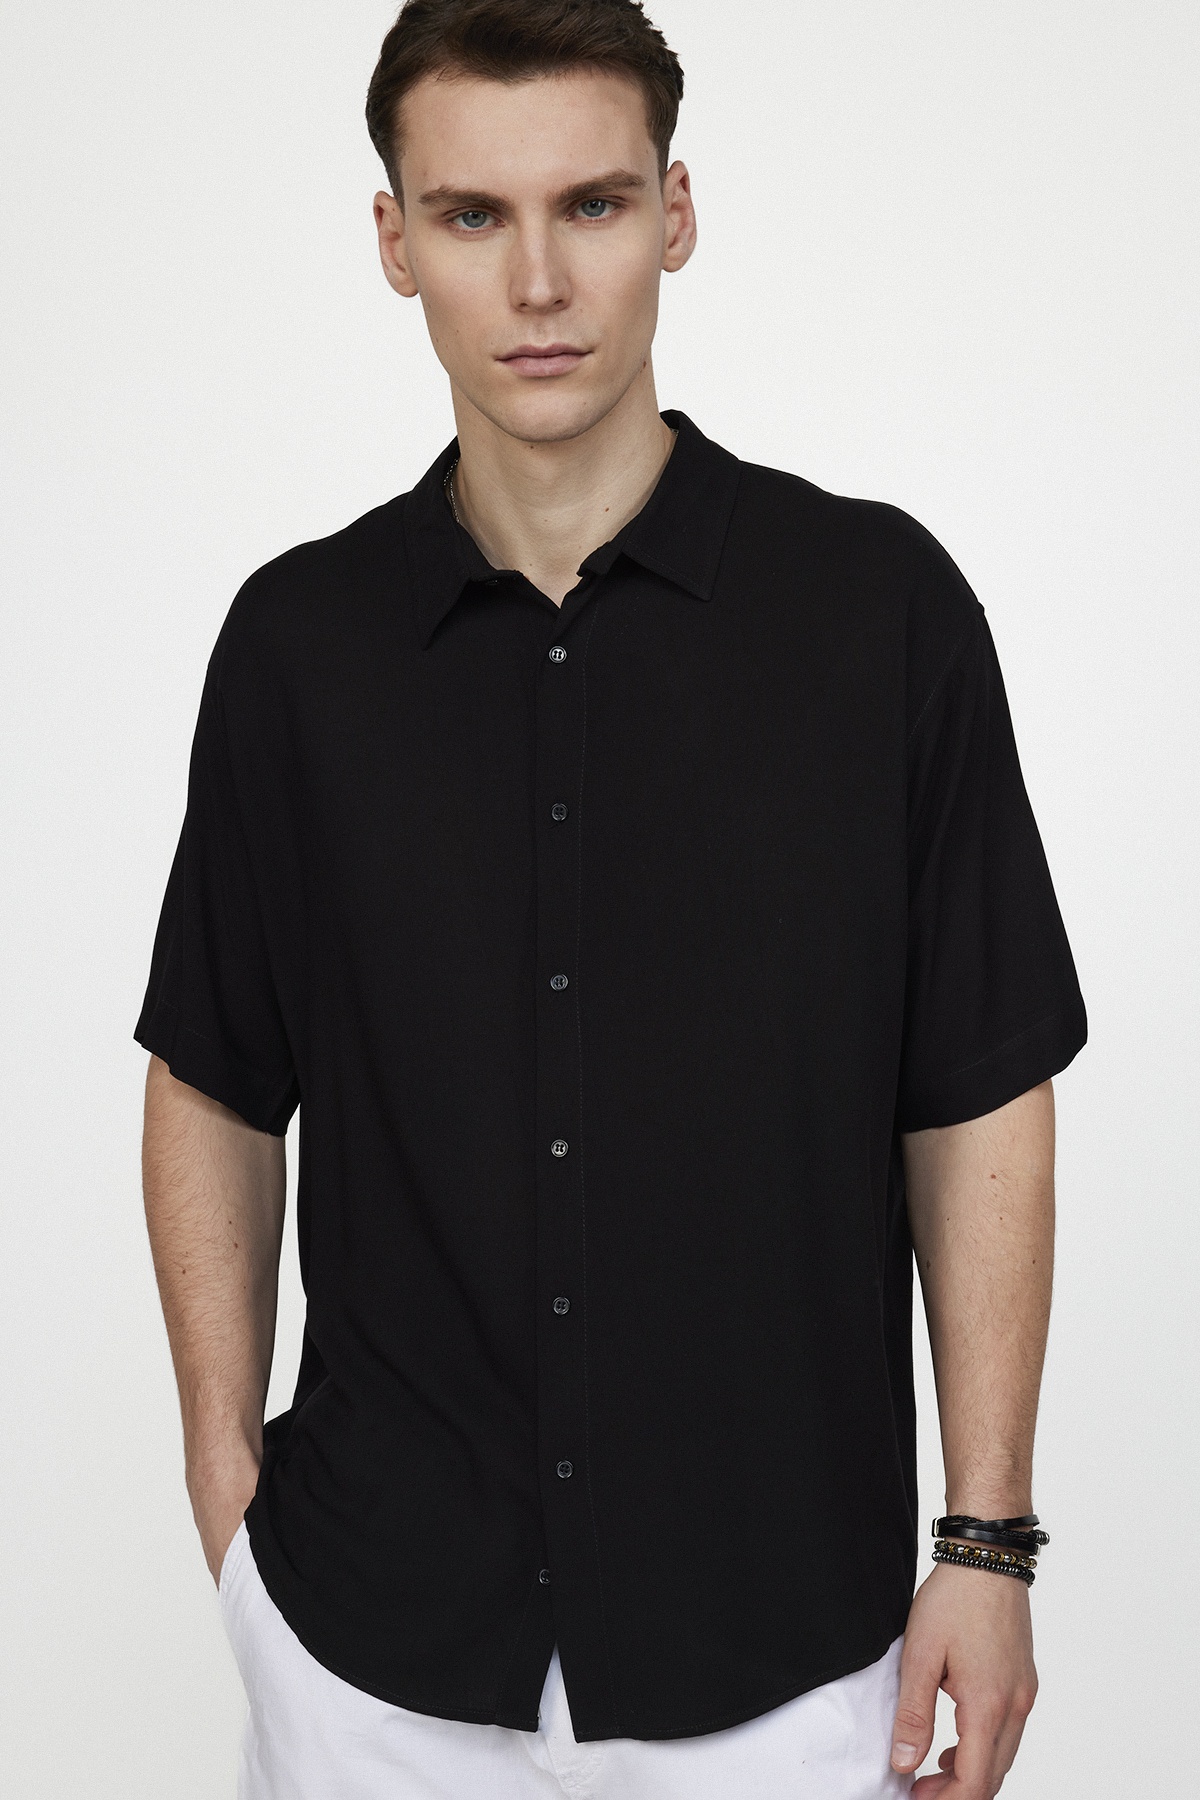 Plain Black Shirt